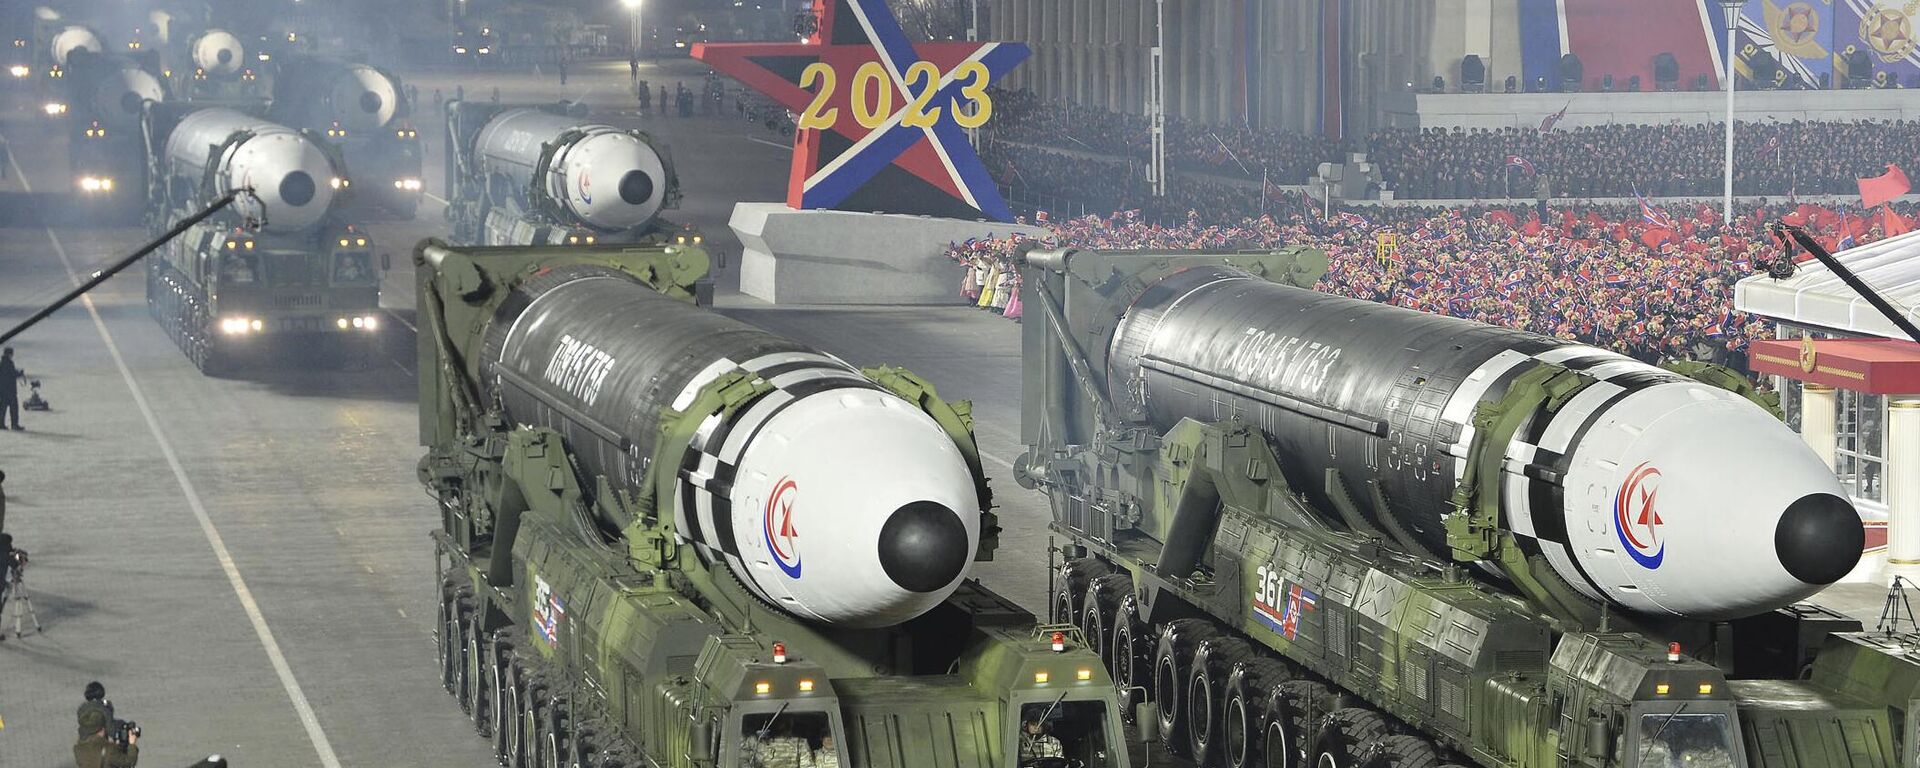 Vojna parada u Severnoj Koreji povodom 75 godina od osnivanja vojske - Sputnik Srbija, 1920, 08.05.2023